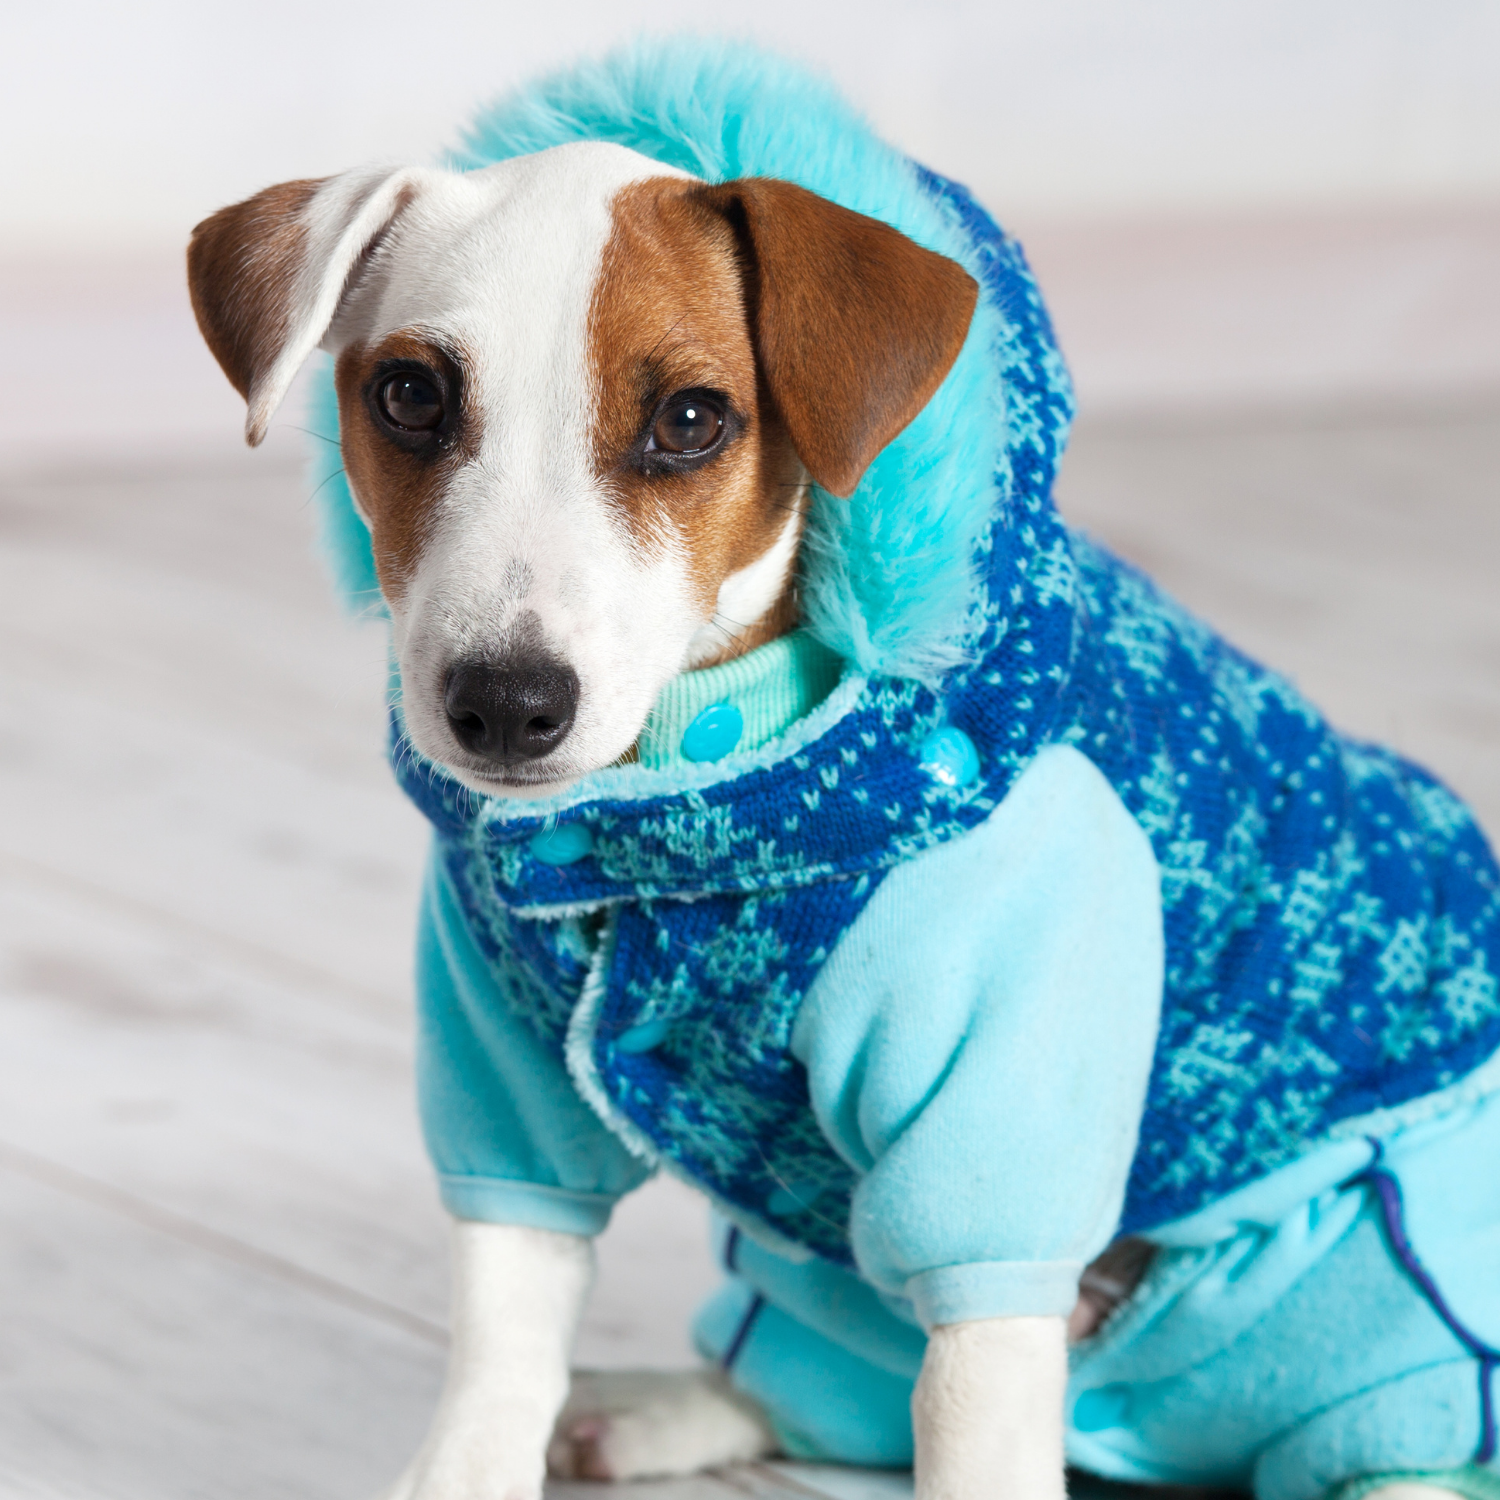 Скидки на одежду для собак до 30% в магазине Дино Зоо Саларис